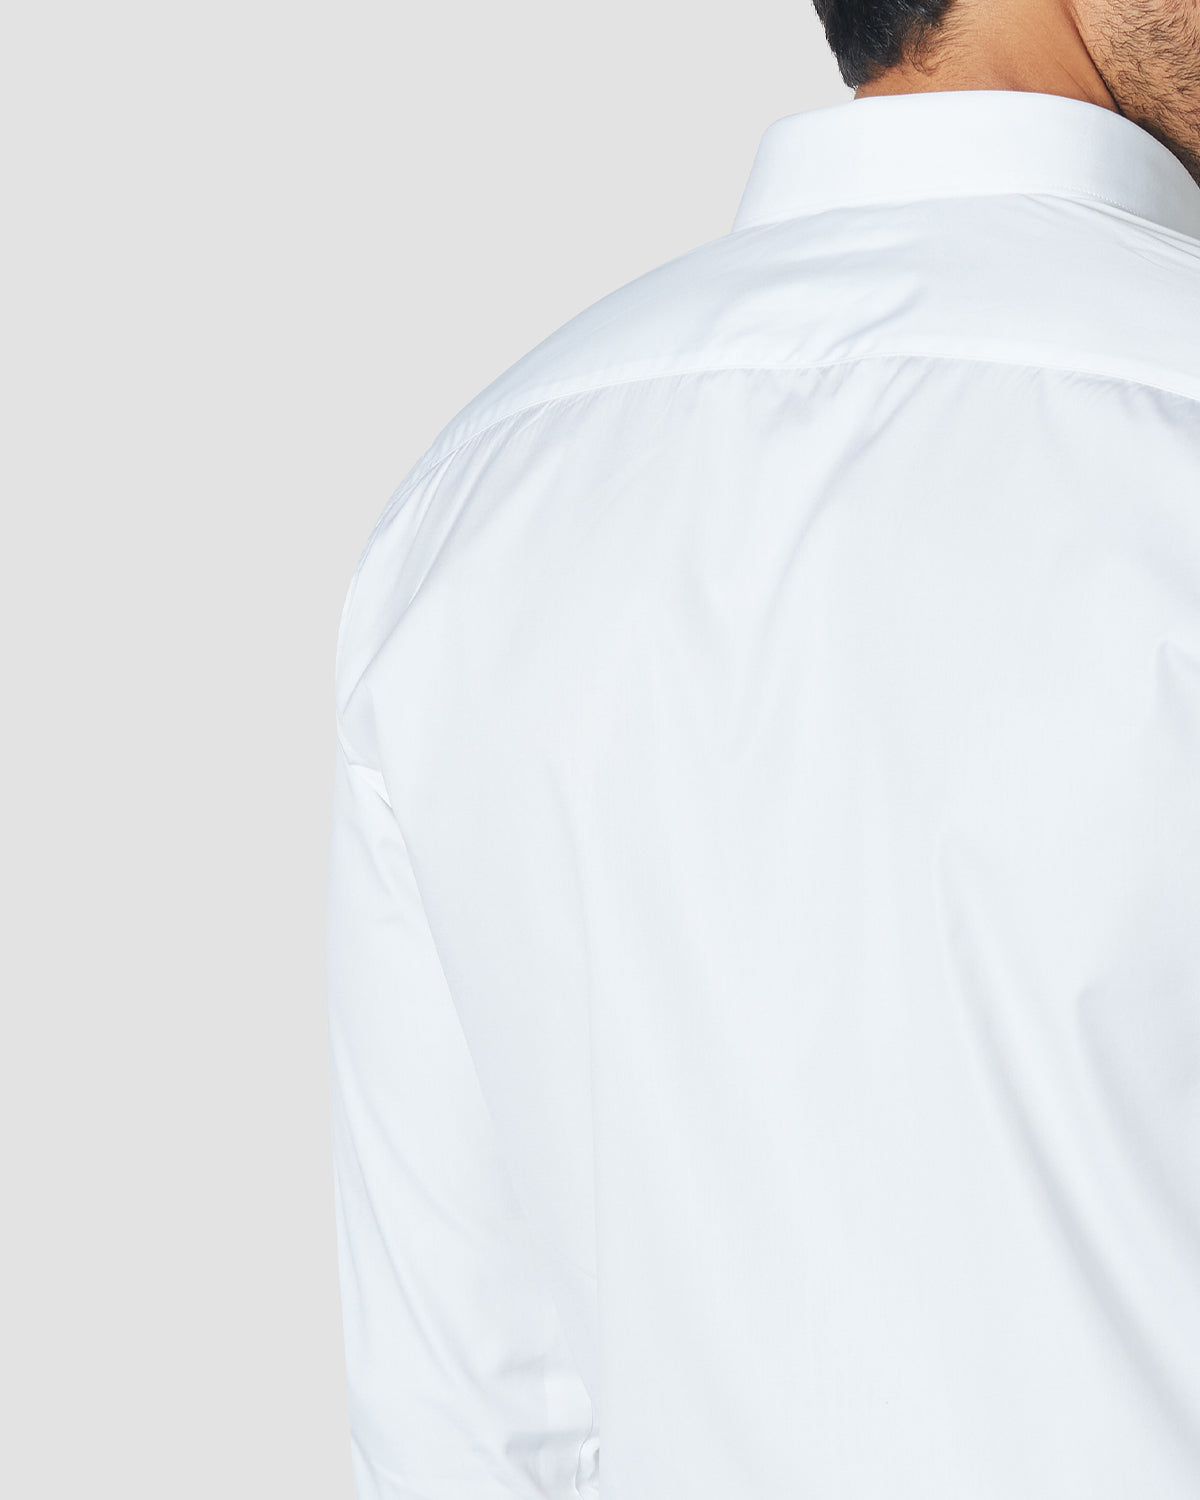 Soktas 3-Button Cuff Shirt - White